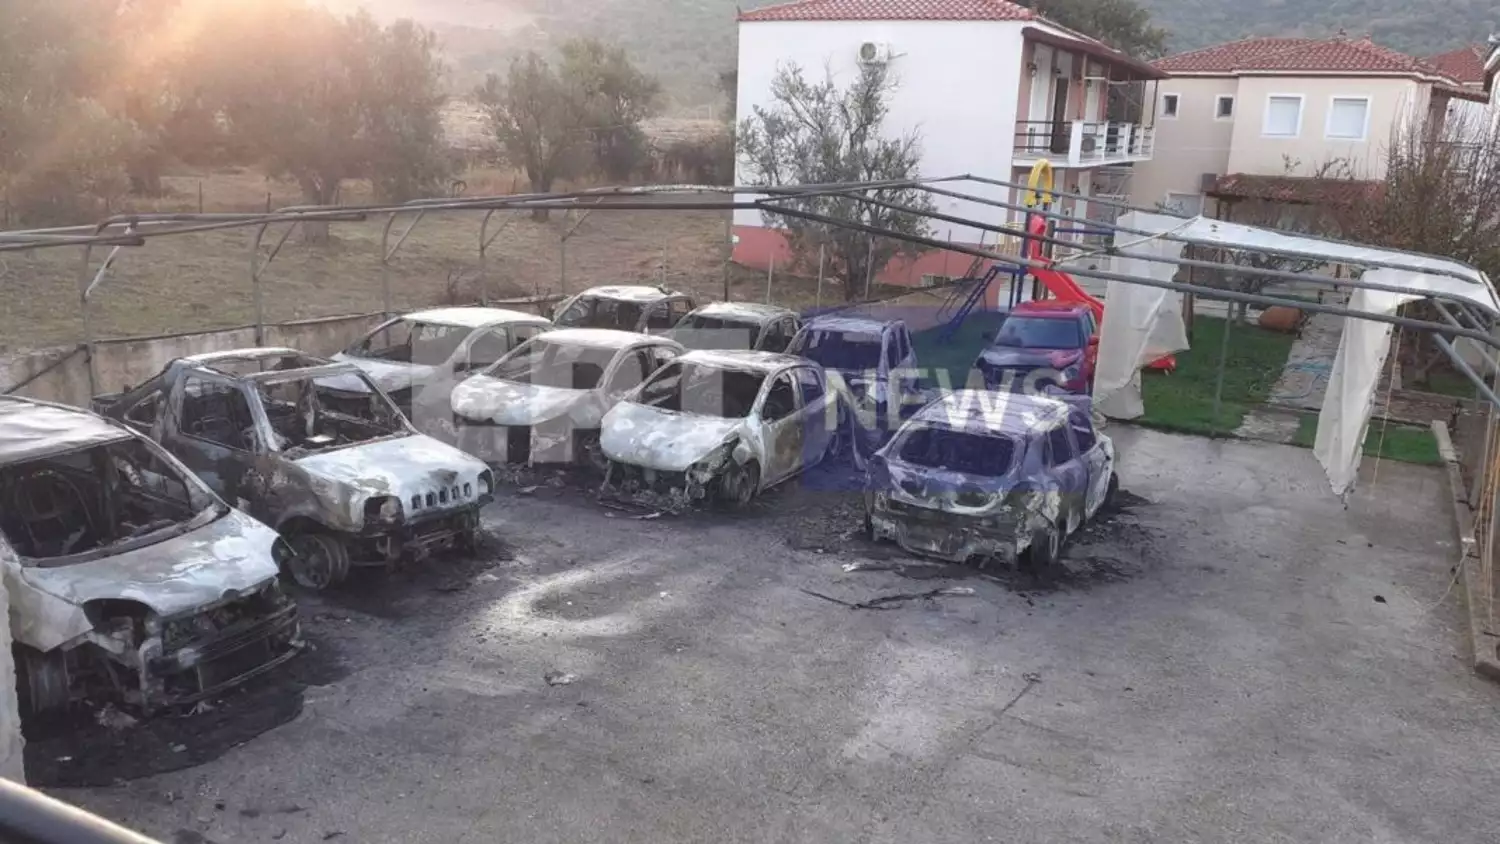 Λέσβος: Μια προσαγωγή για τον εμπρησμό 13 αυτοκινήτων στην Άναξο